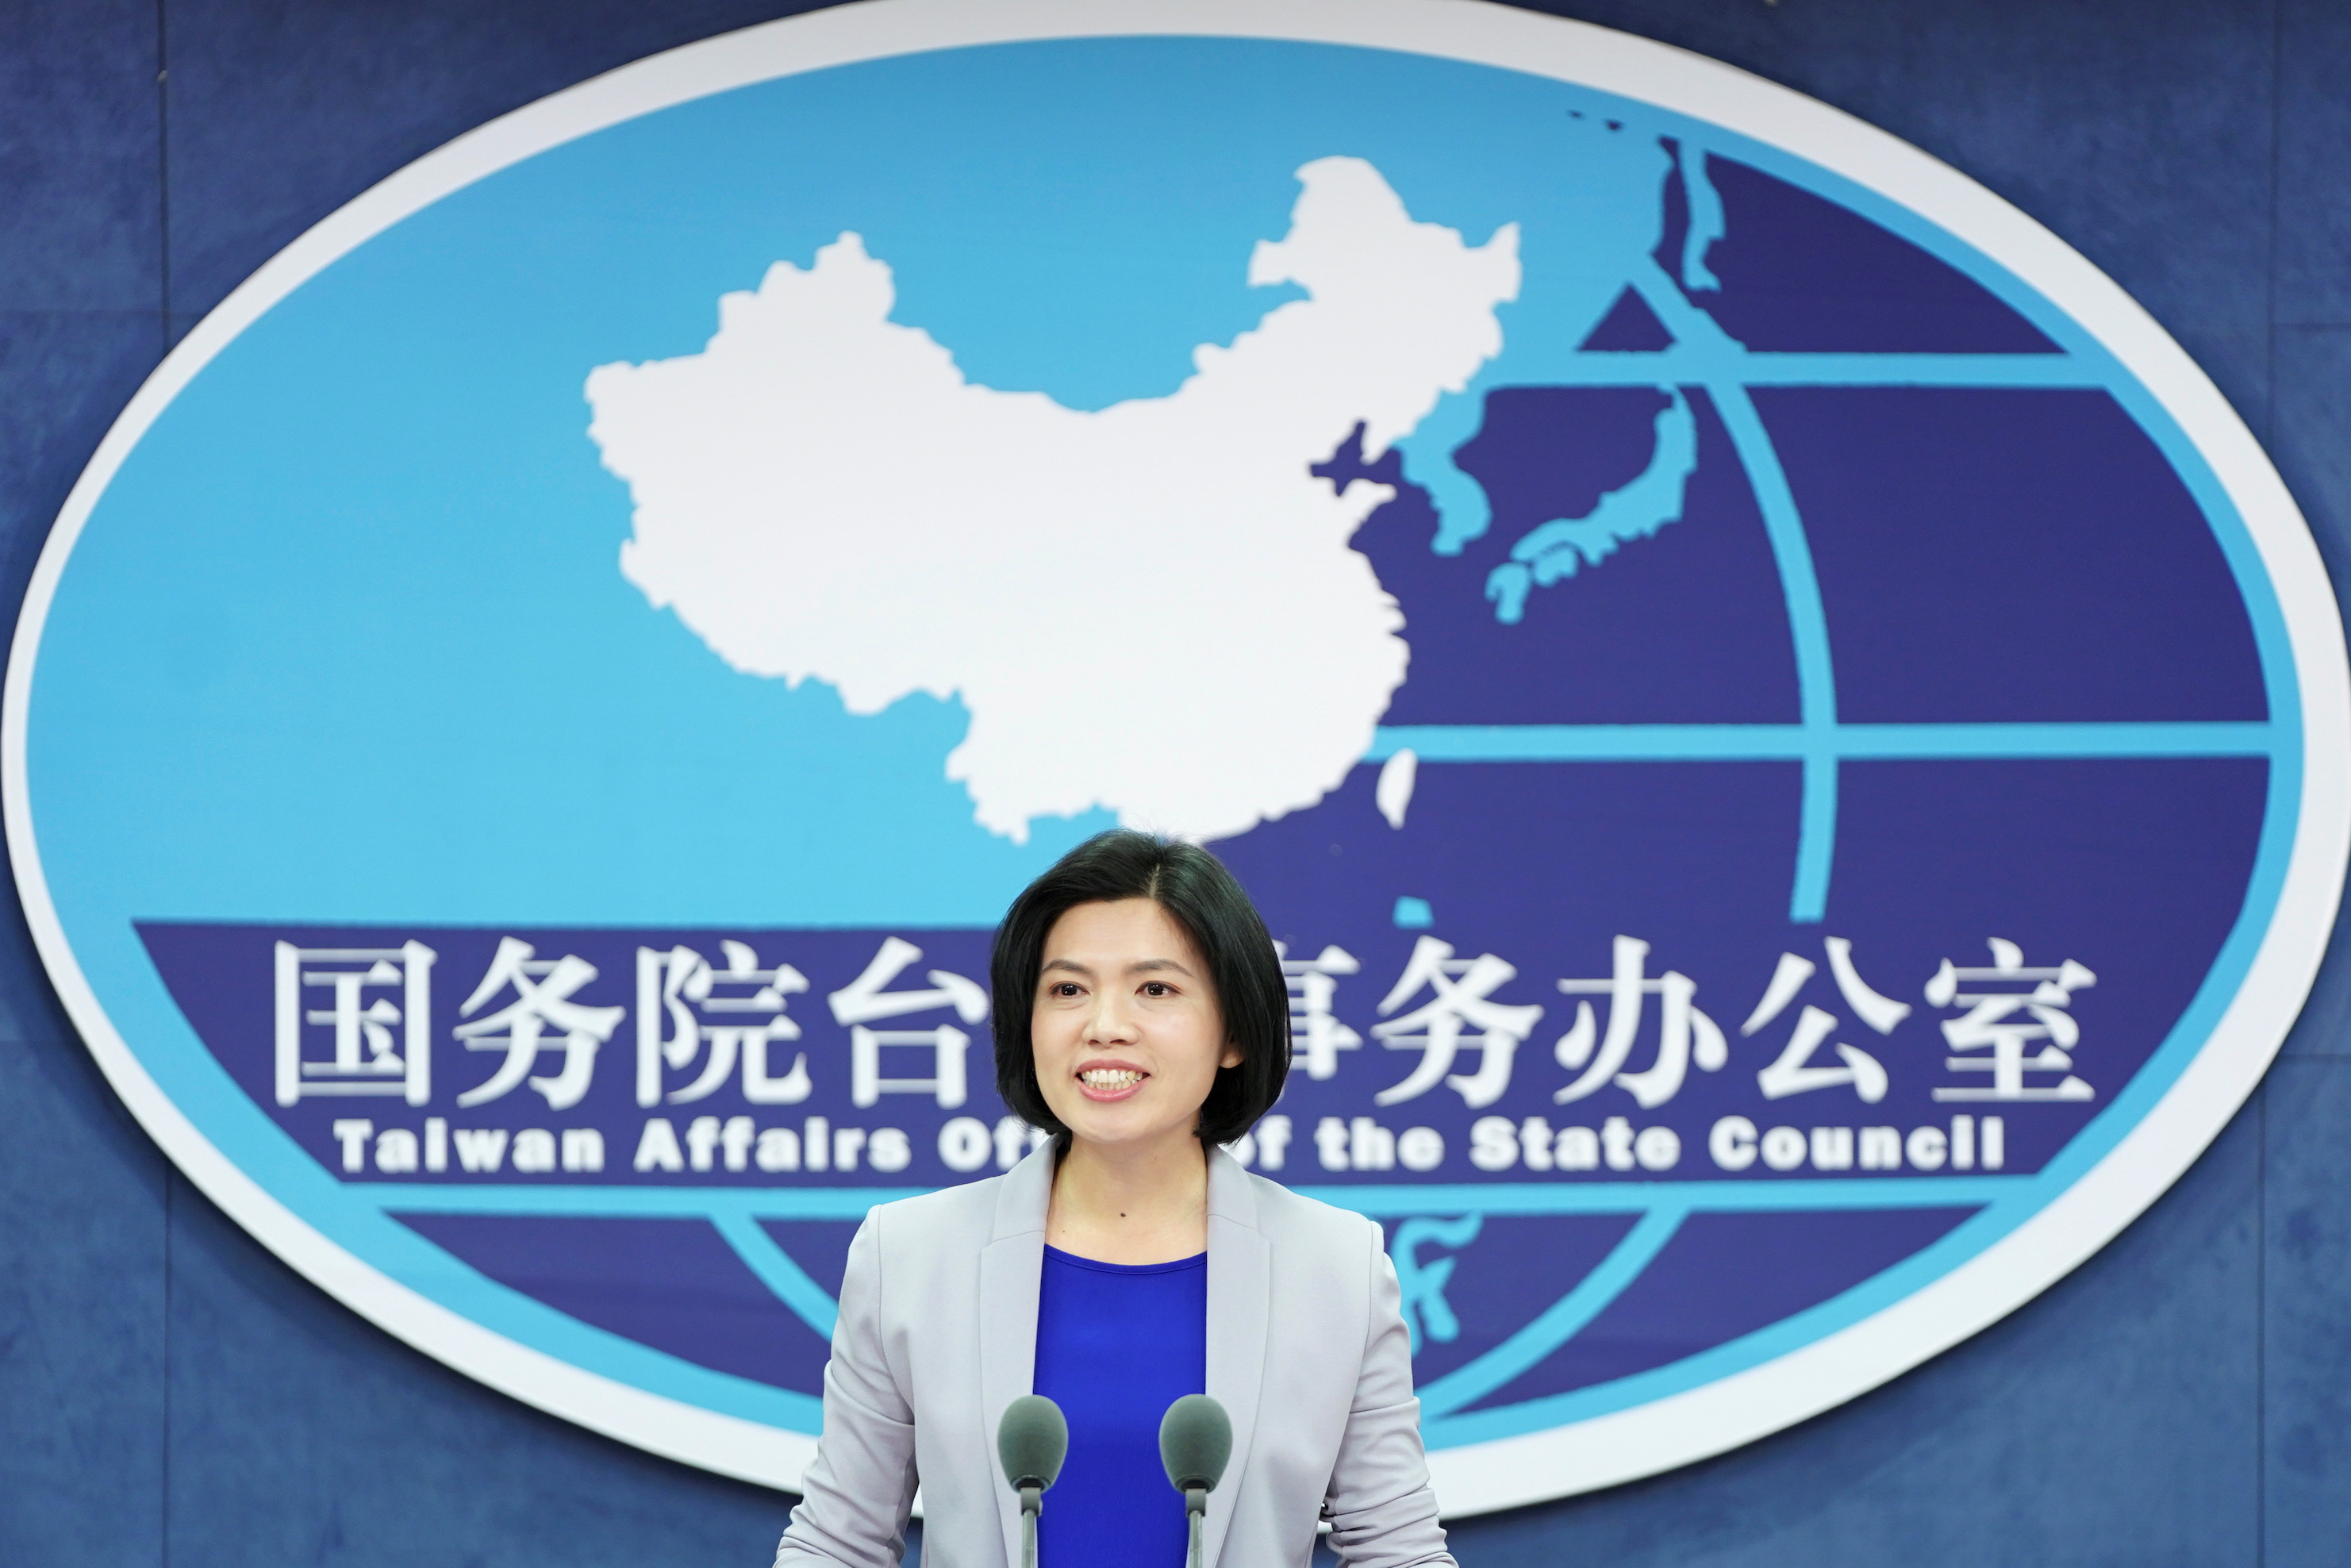 El régimen chino declaró este miércoles que cualquier reunión entre la presidenta de Taiwán, Tsai Ing-wen, y el presidente de la Cámara de Representantes de los Estados Unidos, Kevin McCarthy, sería una “provocación grave” a la que Beijing respondería. (REUTERS)